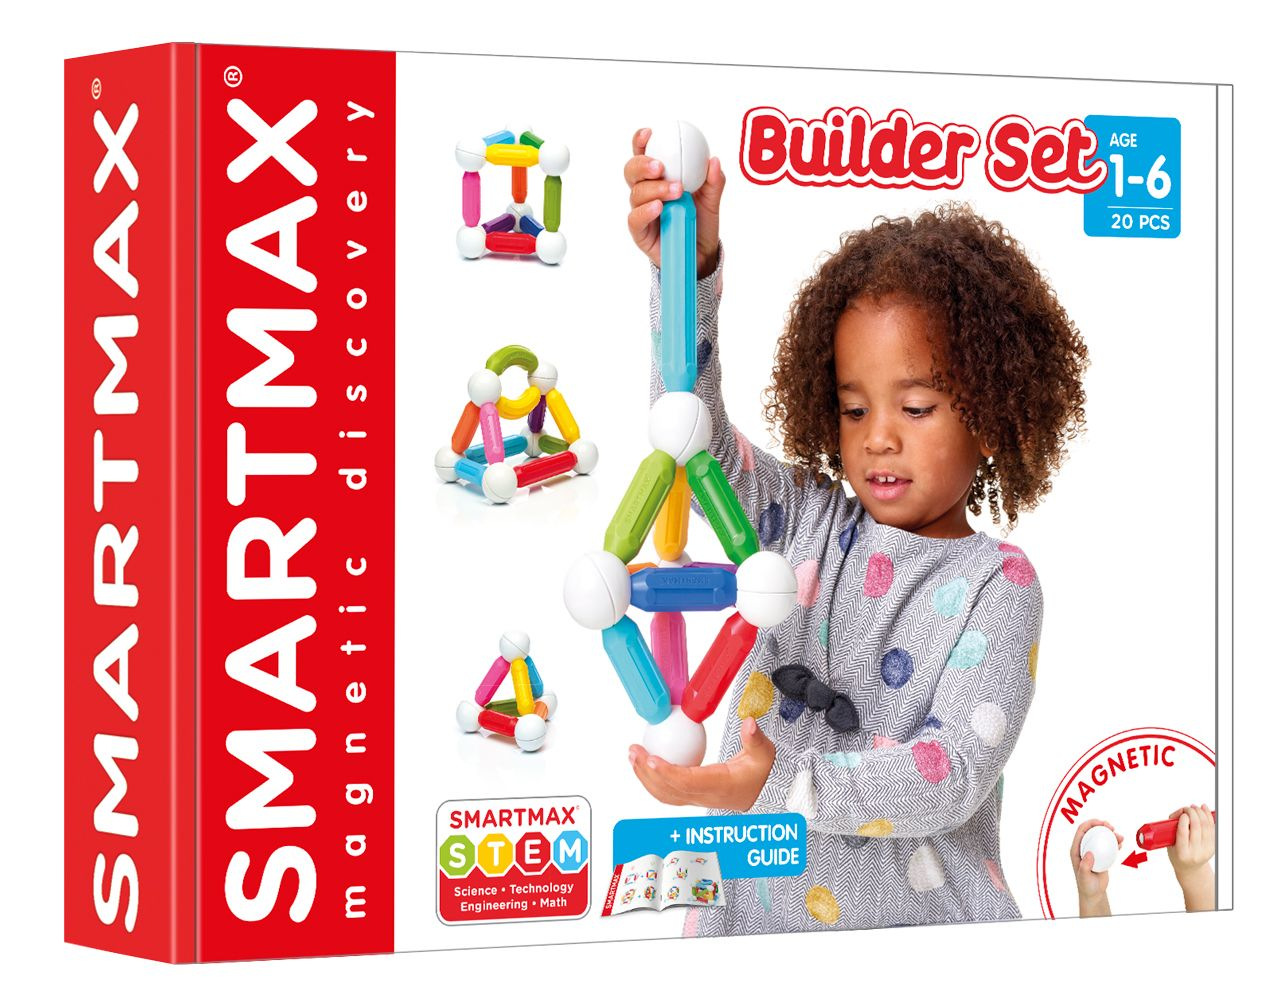 https://www.foxetcompagnie.com/55511/smartmax-builder-set-jeu-de-construction-magnetique-20-pcs.jpg